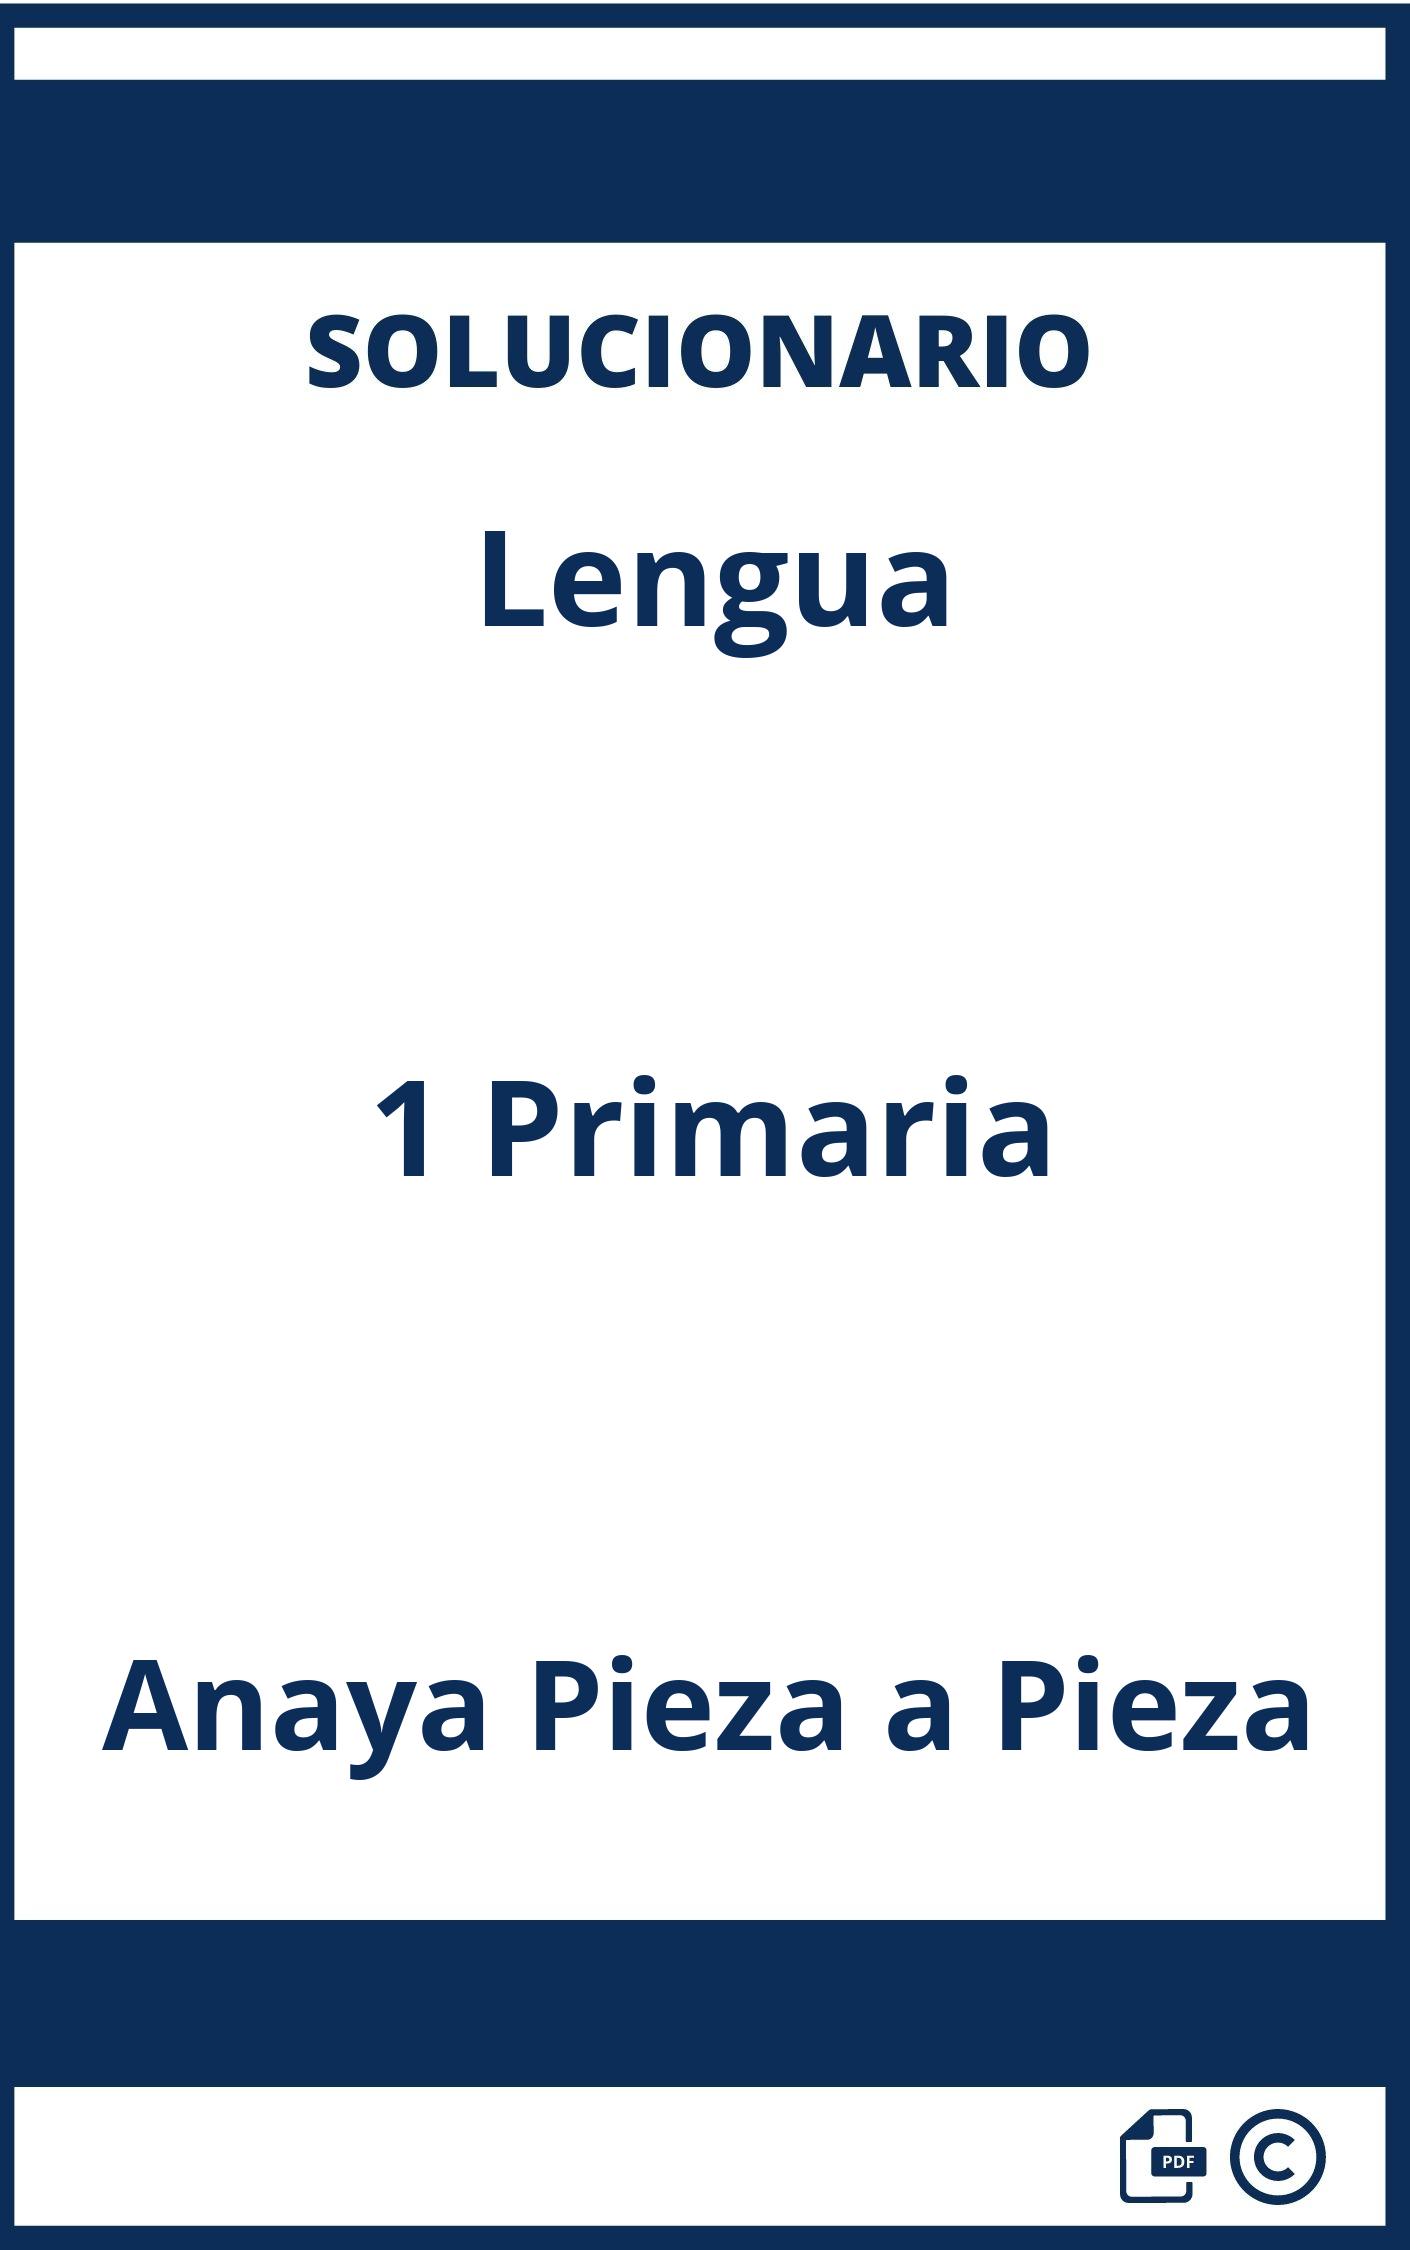 Solucionario Lengua 1 Primaria Anaya Pieza a Pieza